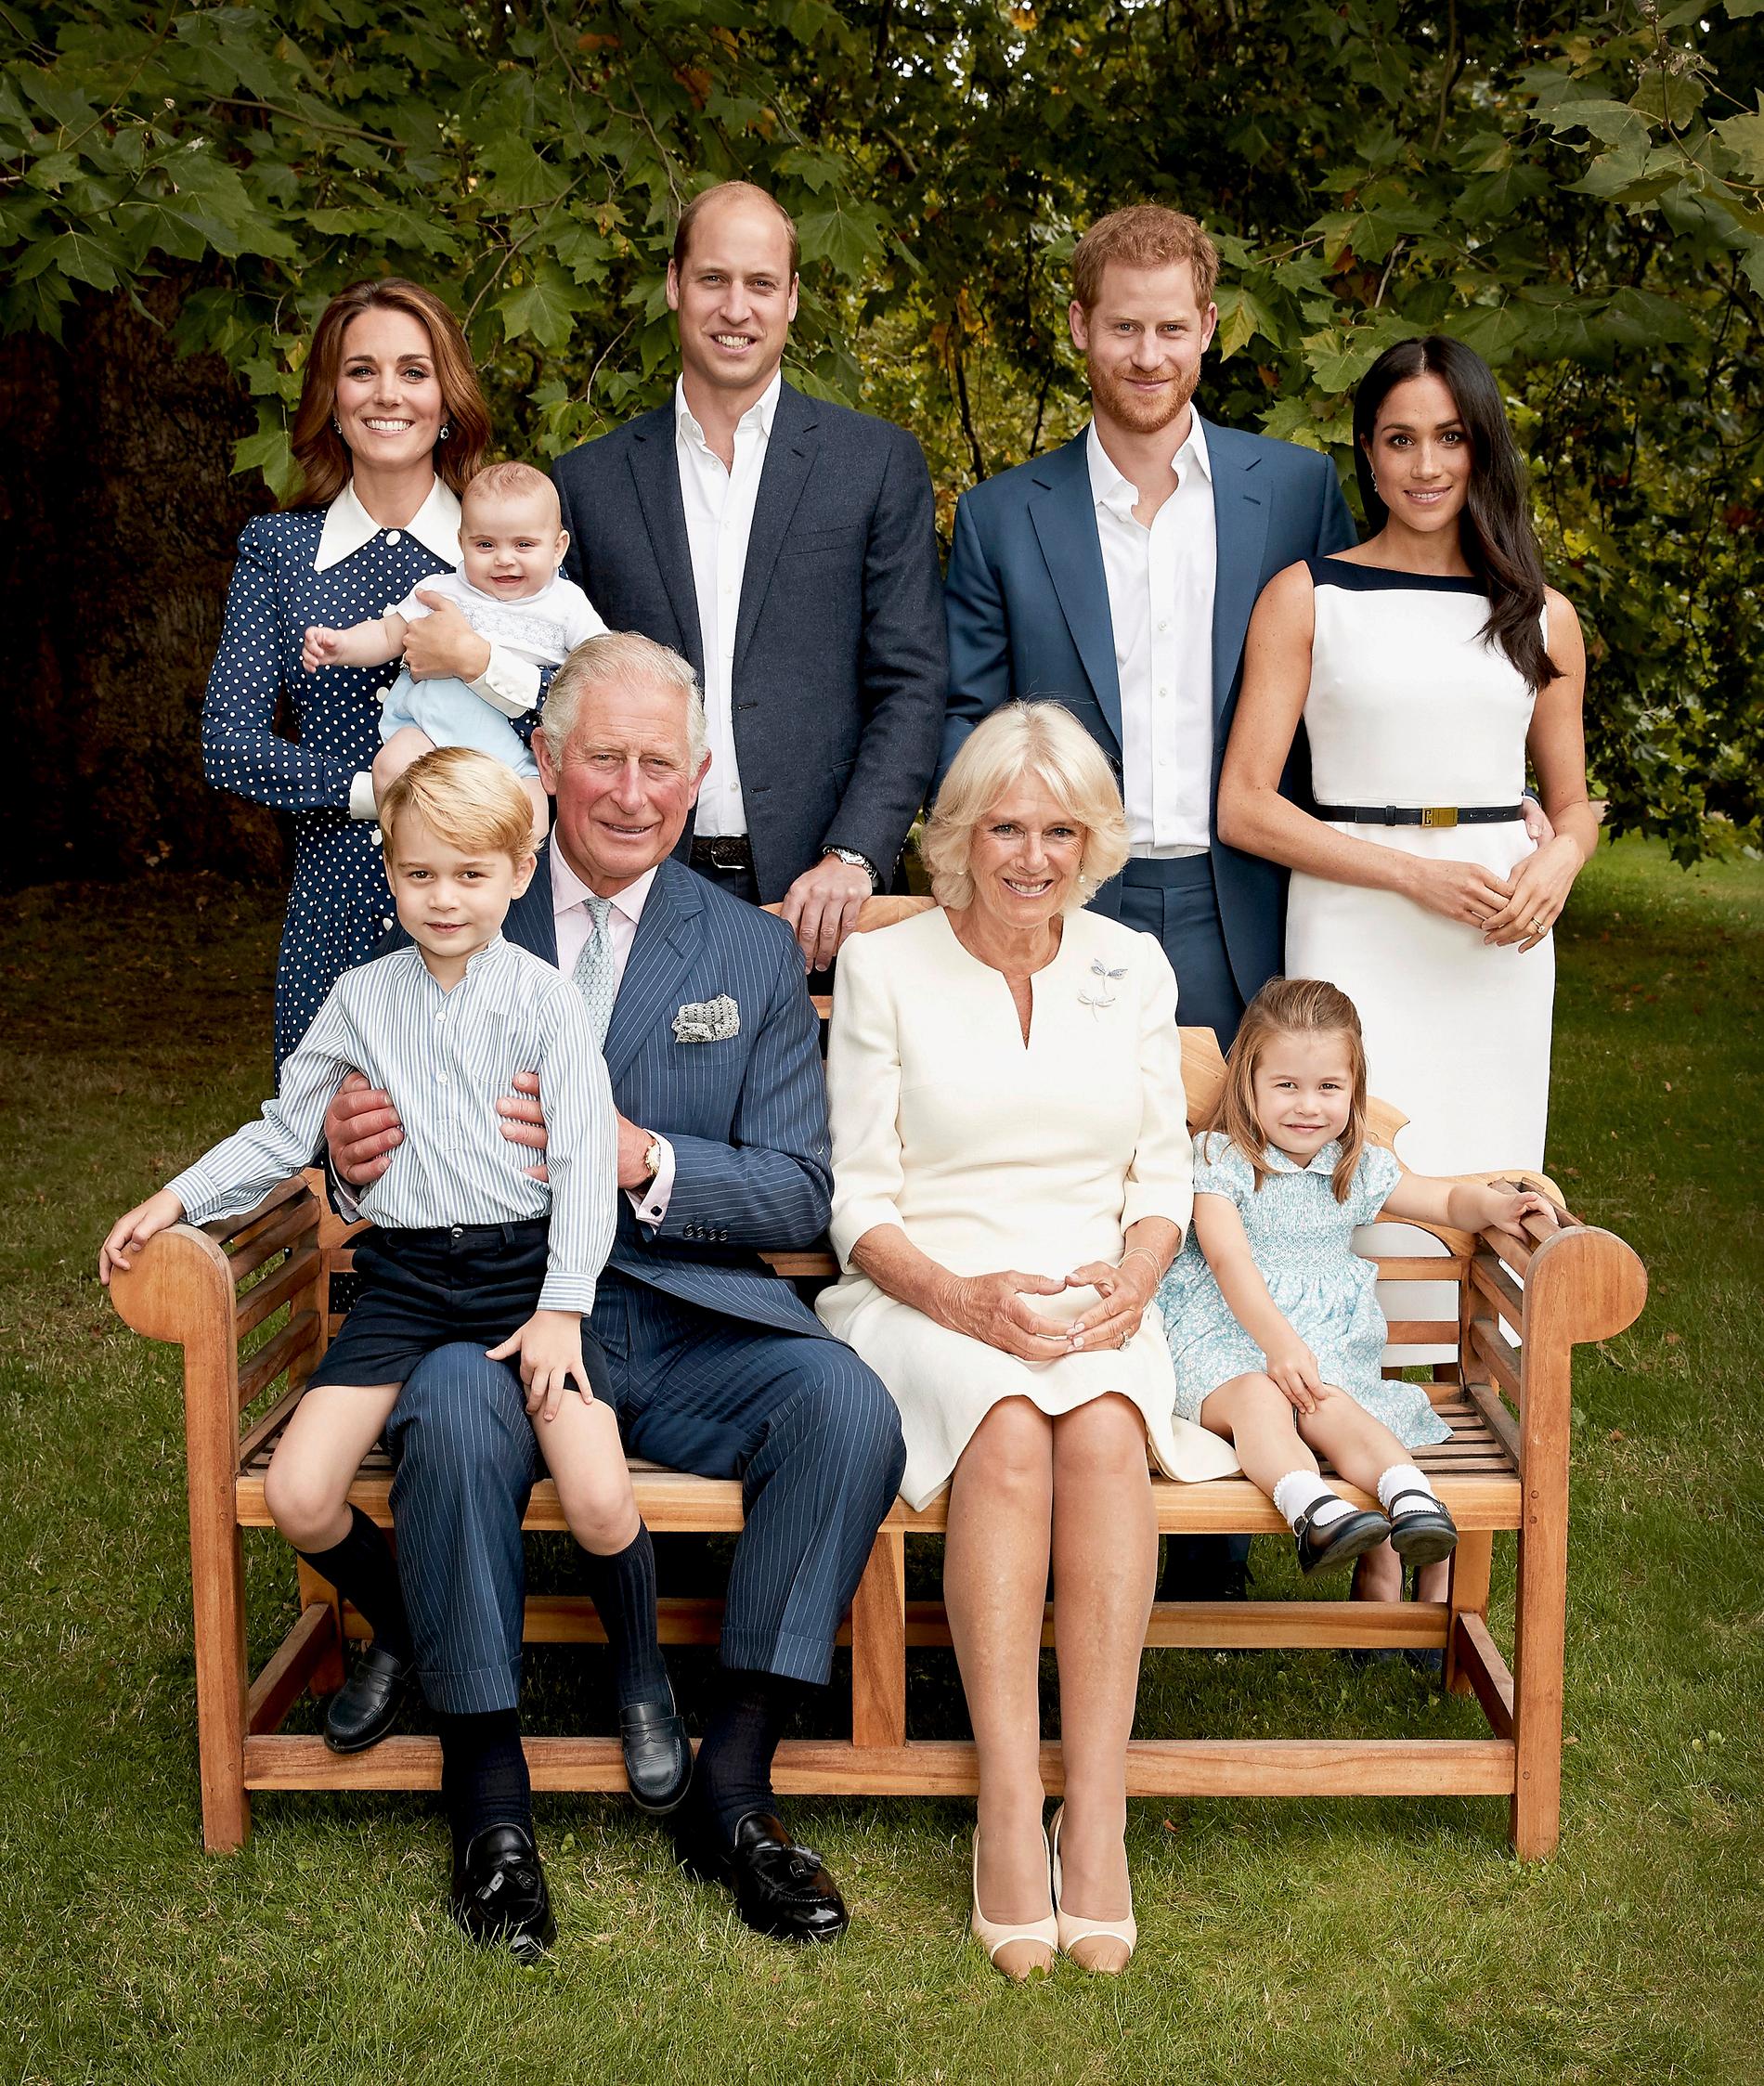 Prins Charles tillsammans med sin familj: I knät prins George, vid hans sida Camilla Parker-Bowles och prinsessan Charlotte och bakom bänken prinsarna William och Harry, hertiginnorna Kate och Meghan, samt det senaste tillskottet prins Louis. Bilden togs den 5 september.